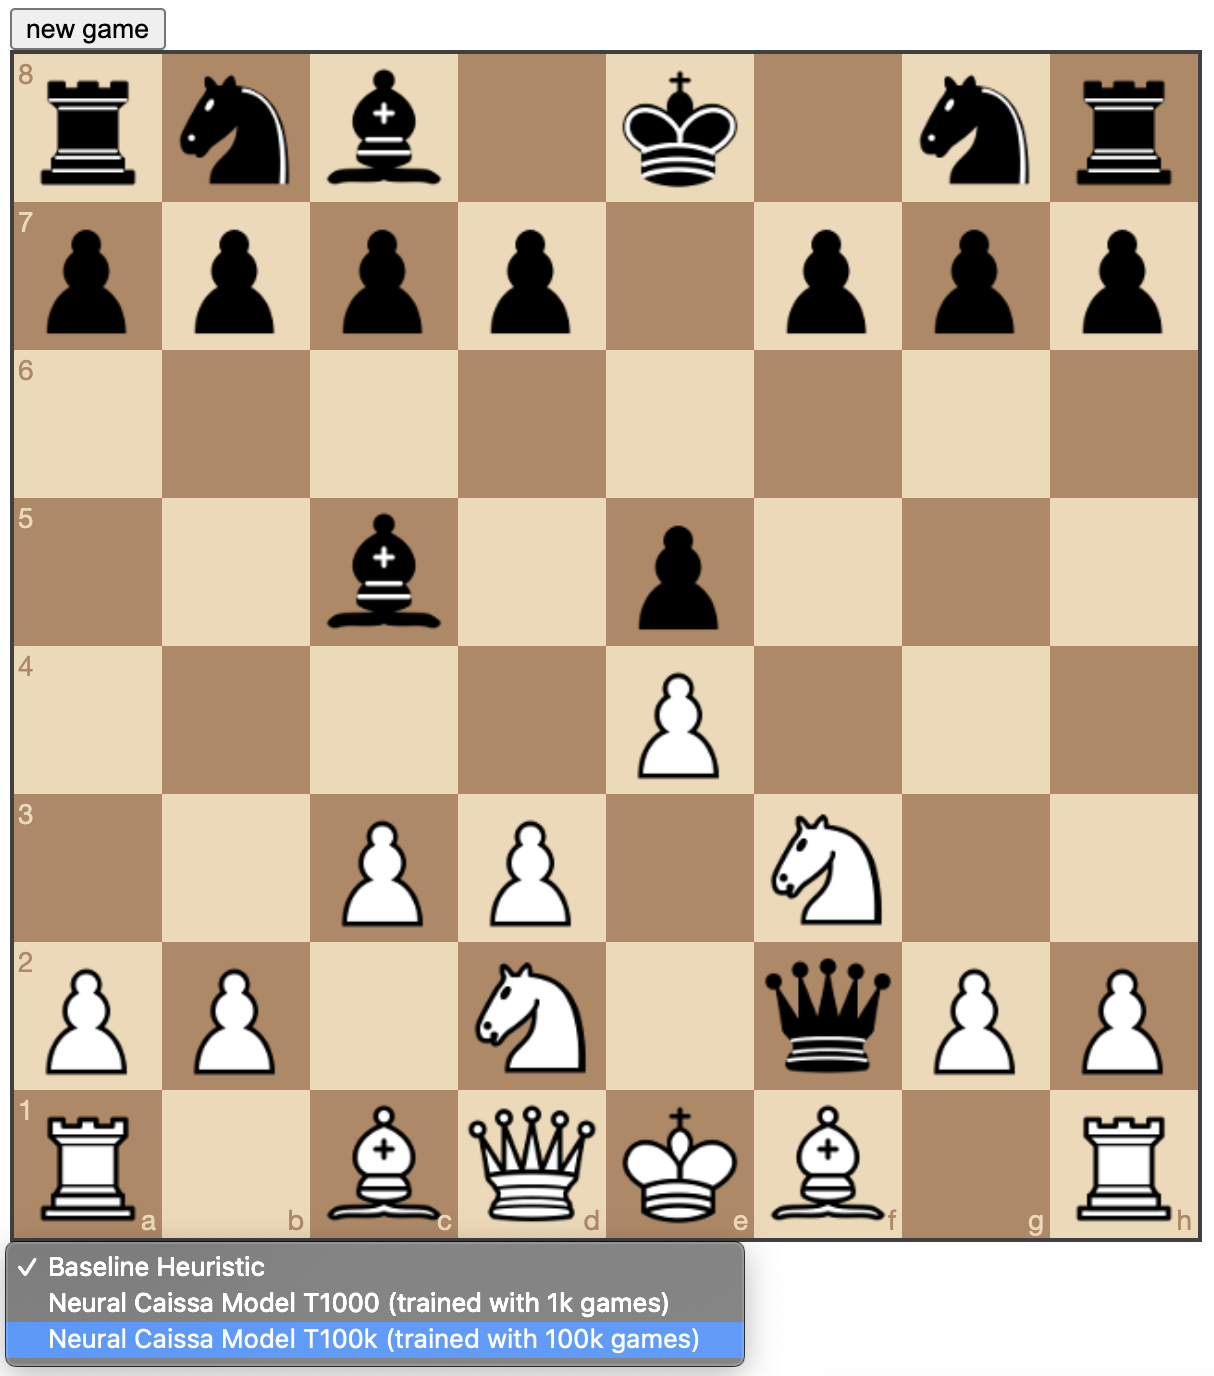 Chessbotx